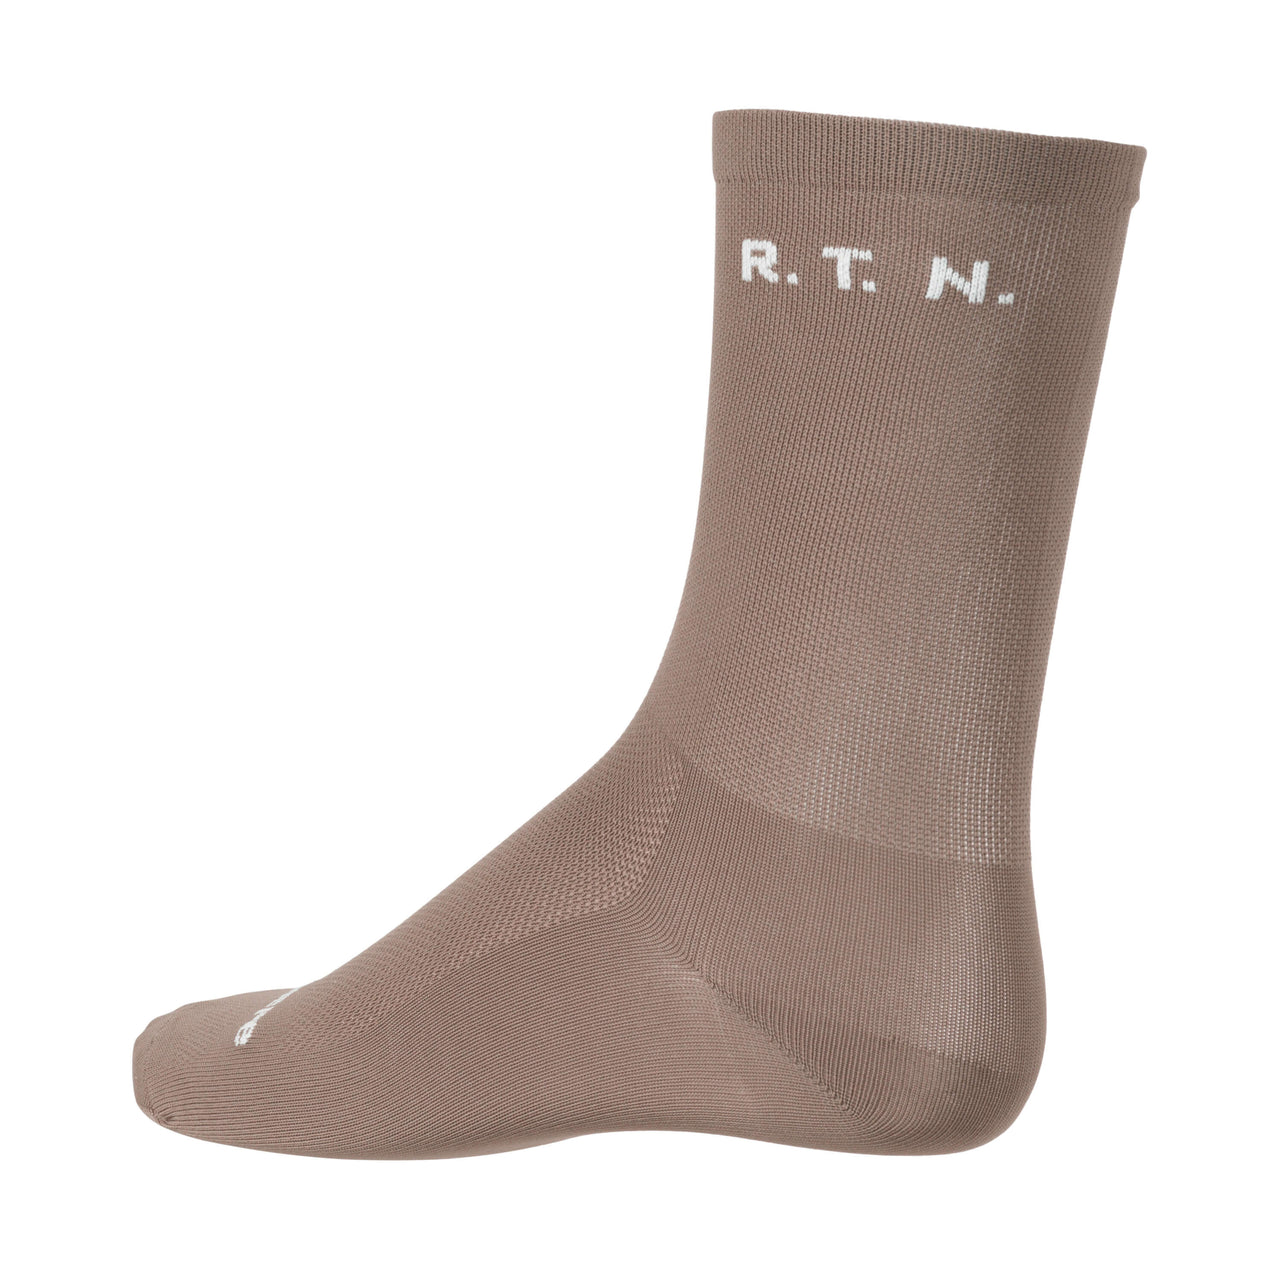 R.T.N Socks - Beige